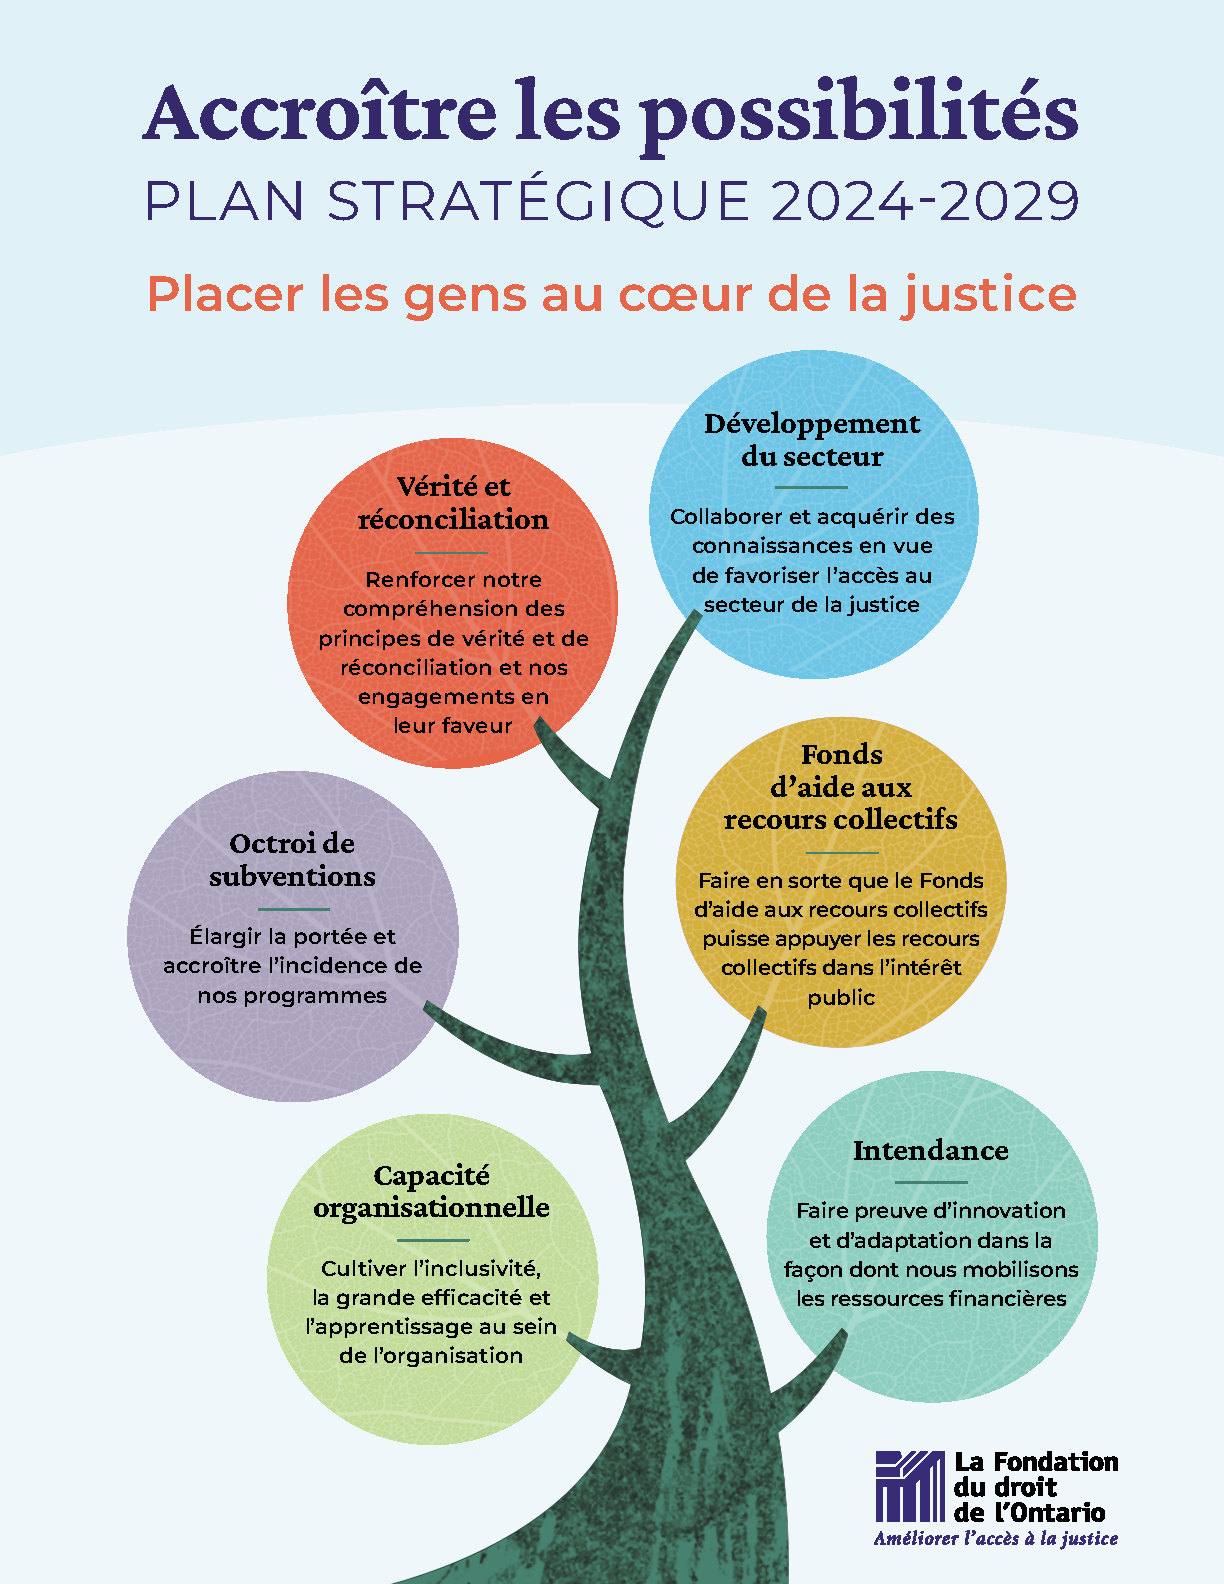 Illustration colorée d'un arbre avec 6 cercles représentant des piliers stratégiques avet le texte "Plan stratégique 2024-2029 intitulé Accroître les possibilités"